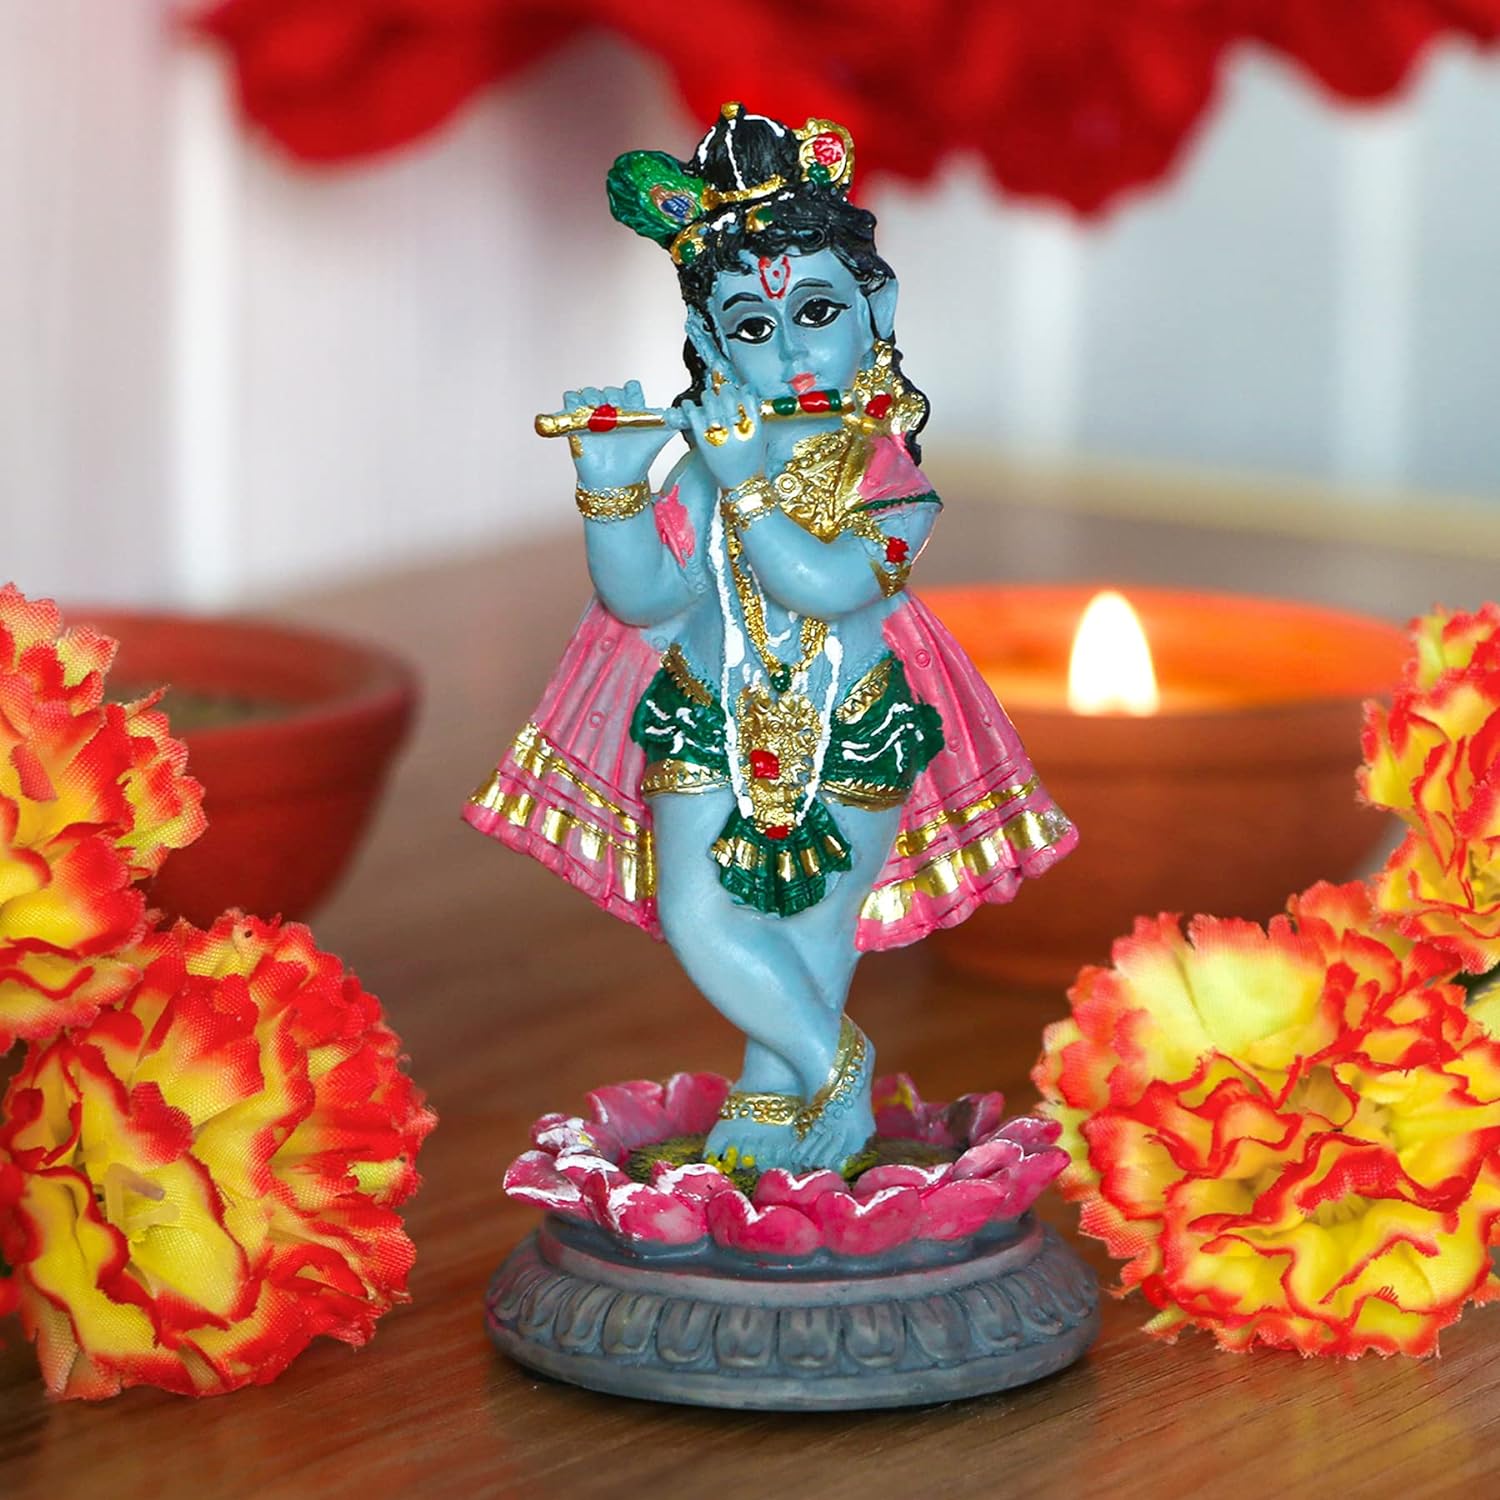 alikiki Indian Idol Krishna God Statue - 3.9”H Hindu Murti Idol Little Krishna Play Flute Sculpture for Home Office Temple Mandir Altar Pooja Item Diwali Puja Figurine